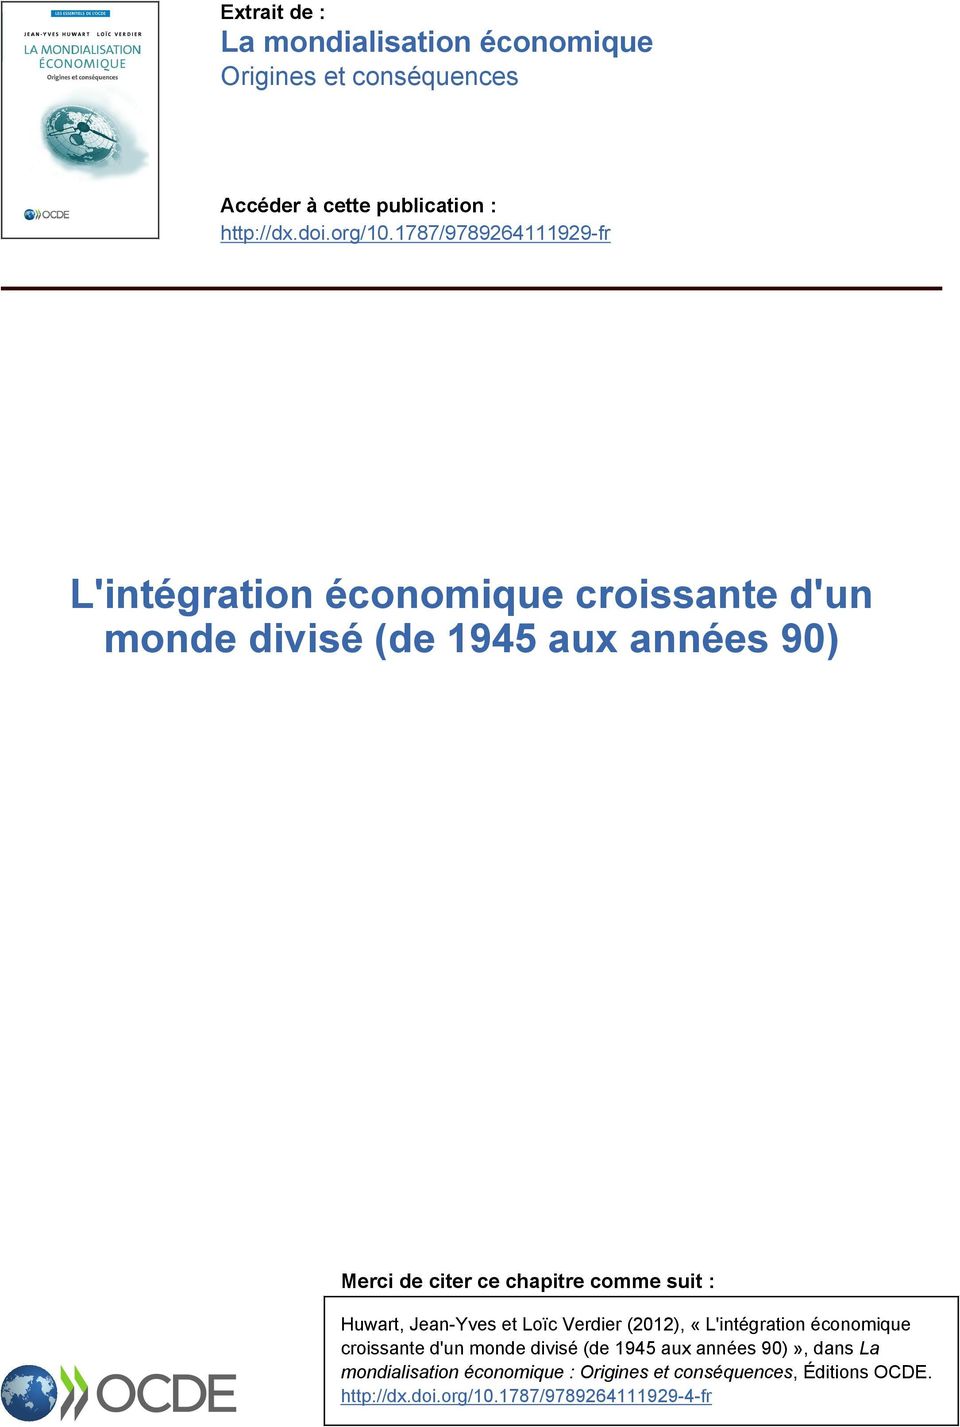 chapitre comme suit : Huwart, Jean-Yves et Loïc Verdier (2012), «L'intégration économique croissante d'un monde divisé (de